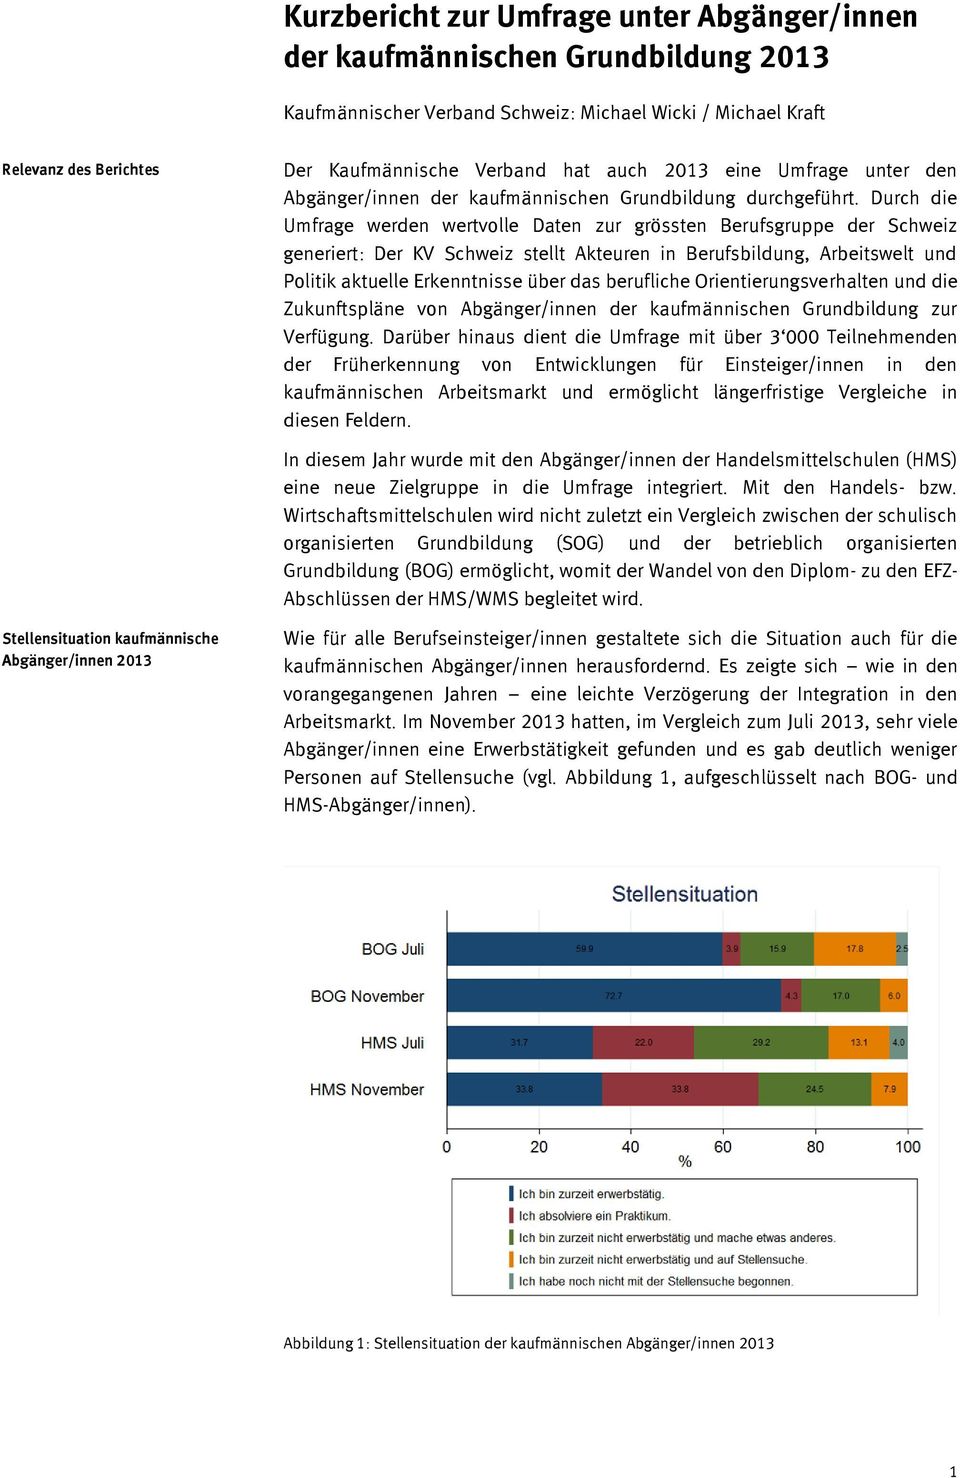 Durch die Umfrage werden wertvolle Daten zur grössten Berufsgruppe der Schweiz generiert: Der KV Schweiz stellt Akteuren in Berufsbildung, Arbeitswelt und Politik aktuelle Erkenntnisse über das